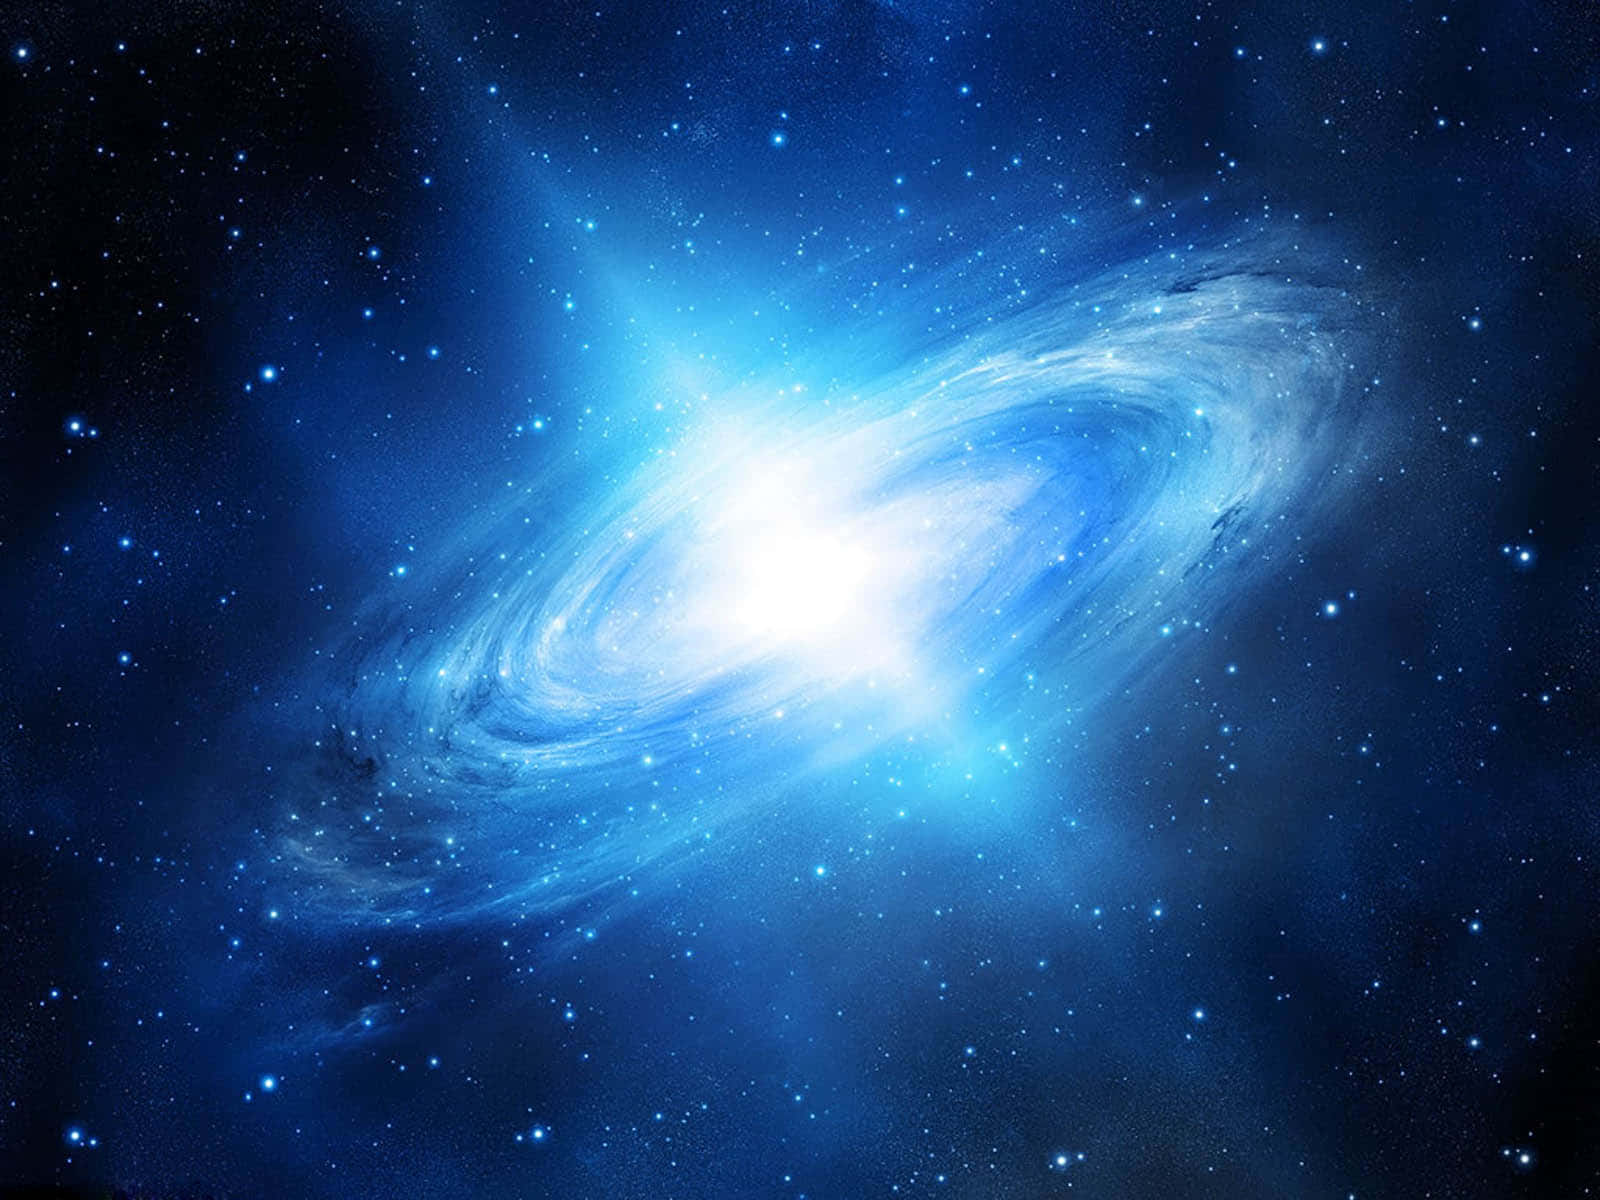 Etflerfarvet Billede Af Det Uendelige Univers.